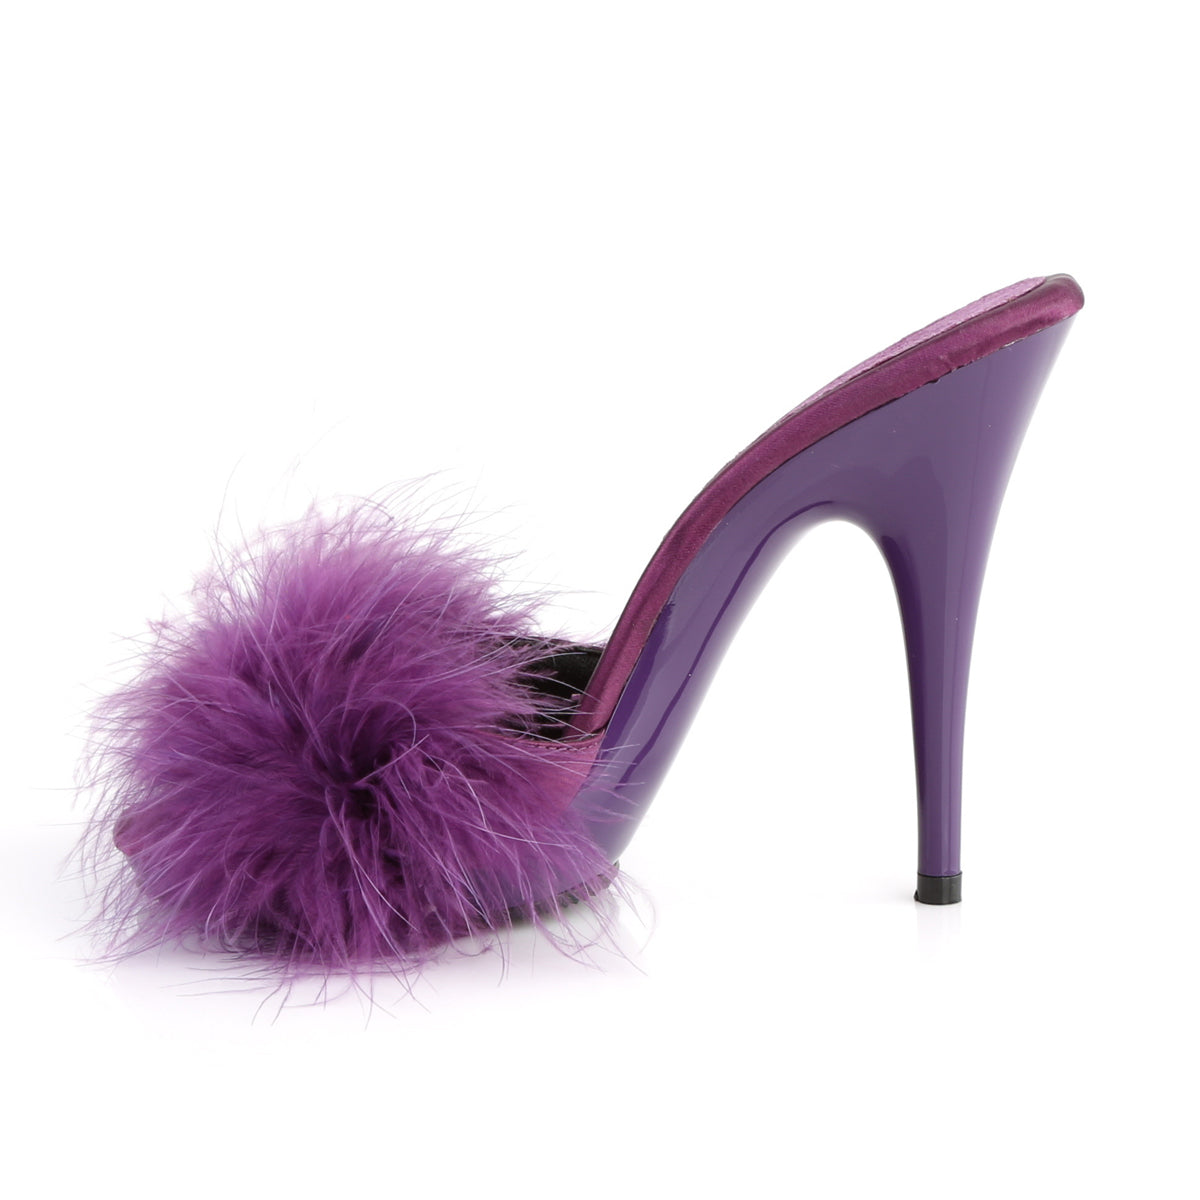 Fabulicious Sandalias para mujer POISE-501F Purple Satin-Marabou Piel / Purple